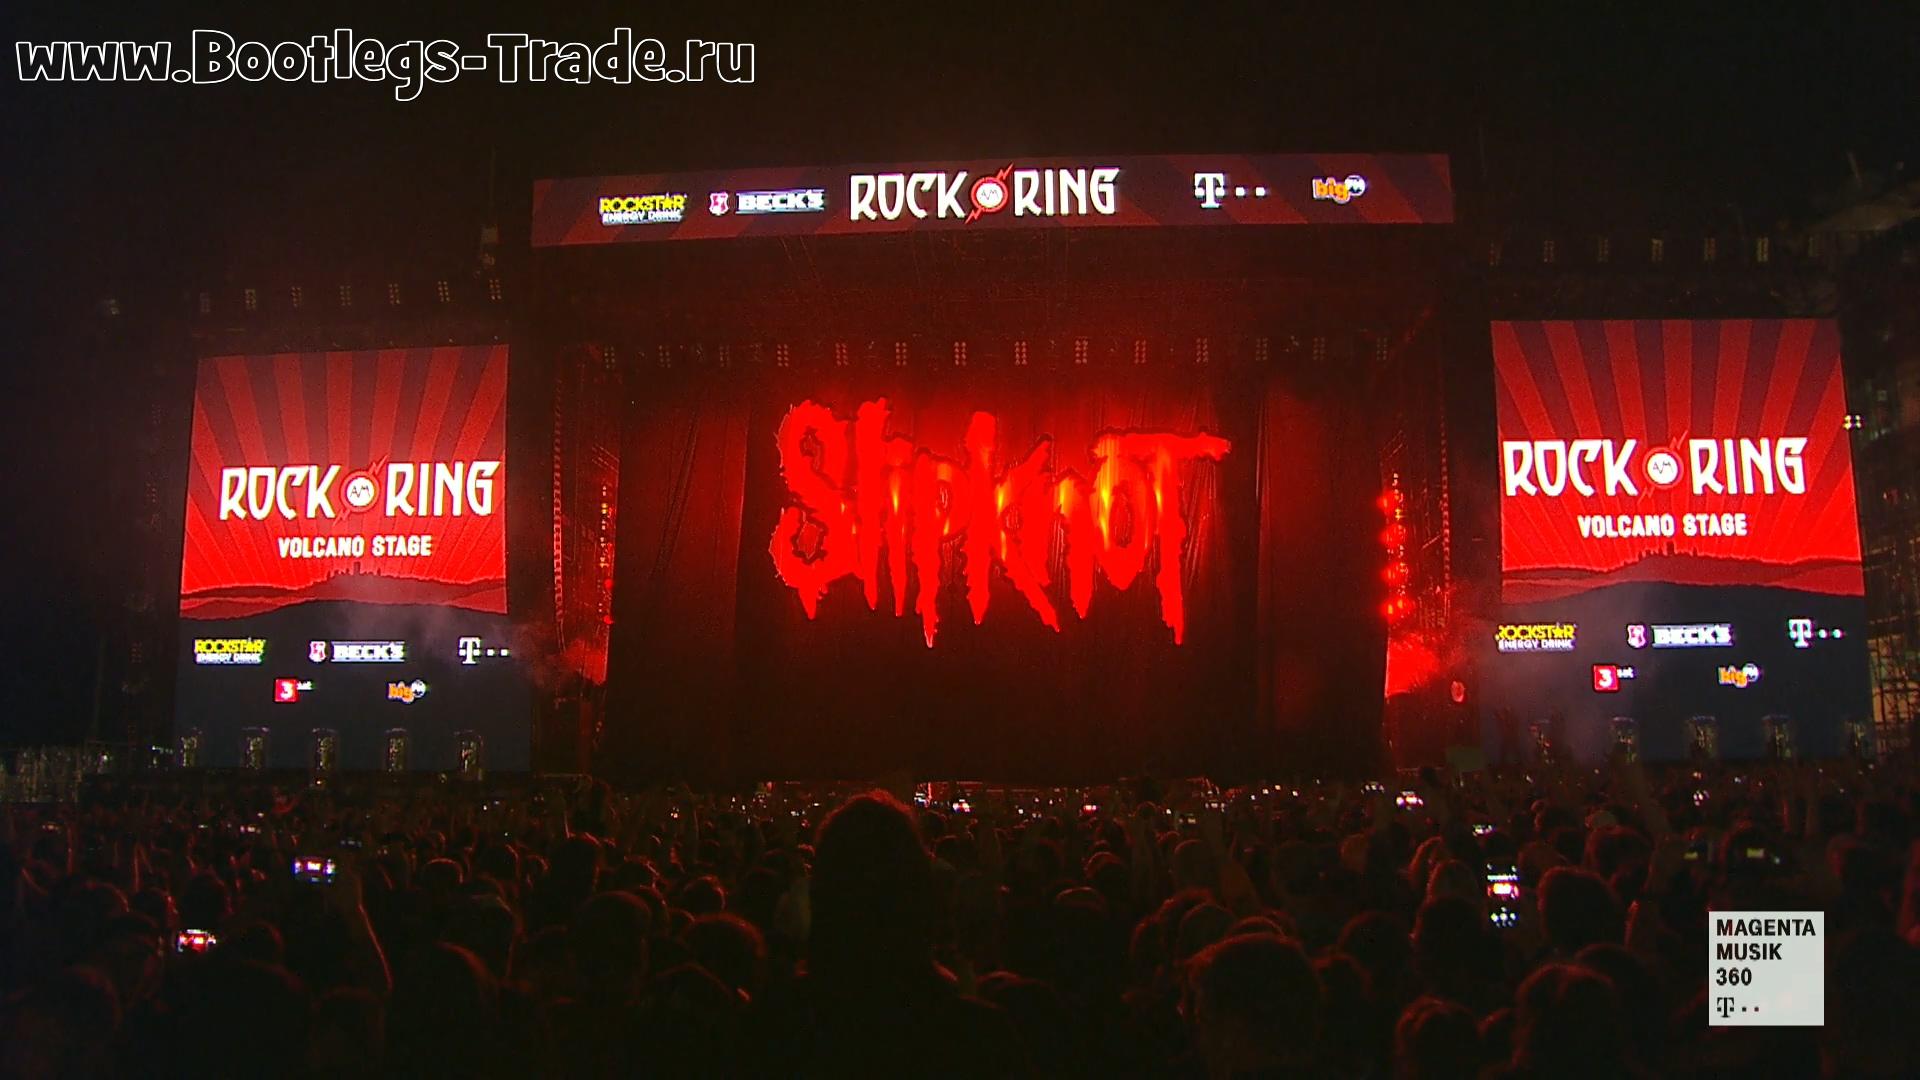 Slipknot 2019-06-09 Rock am Ring 2019, Nurburgring, Nurburg, Germany (Webcast HD 1080)